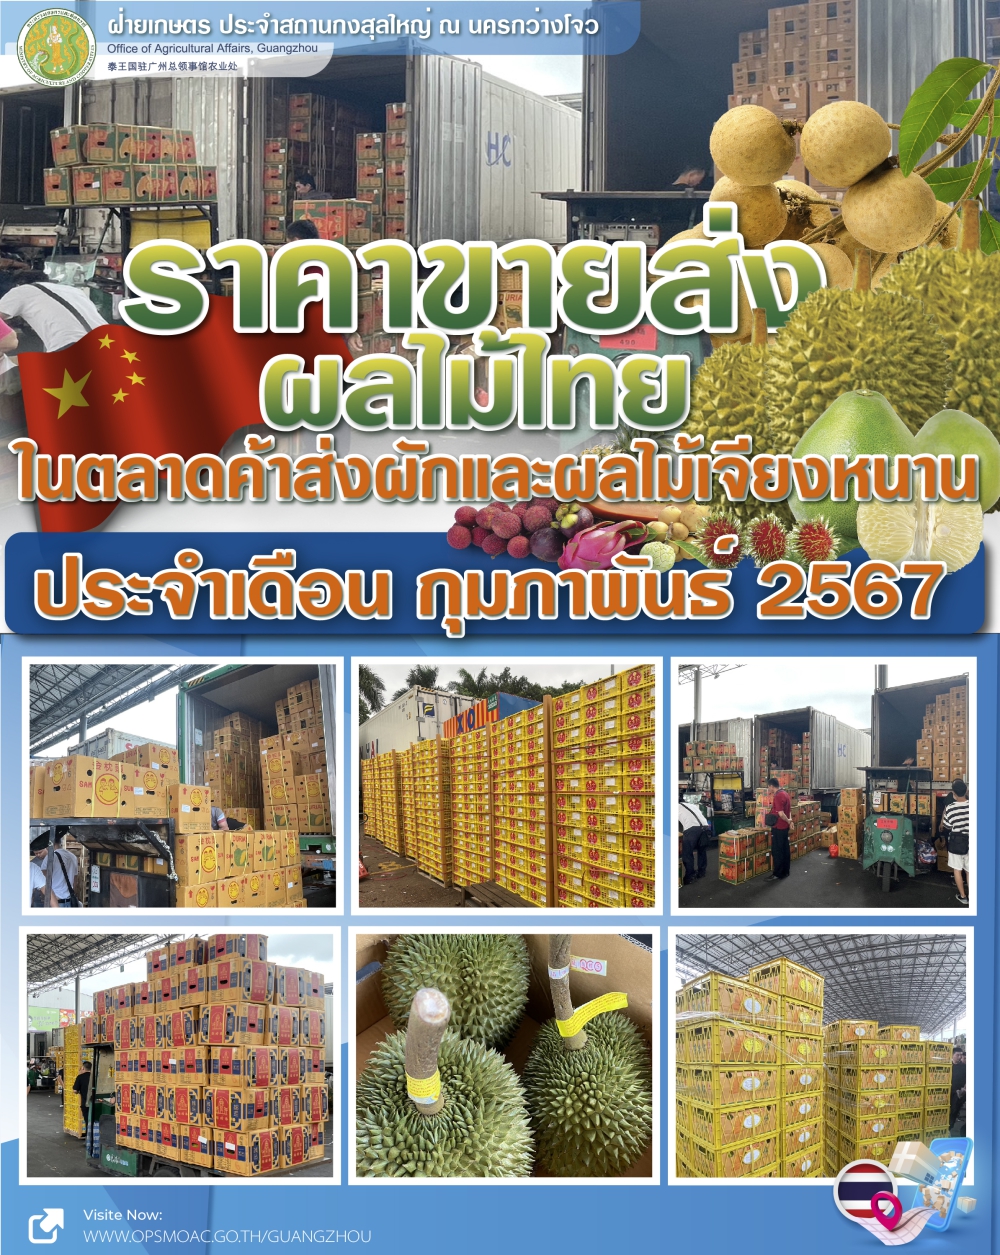 ราคาขายส่งผลไม้ไทยและเวียดนามที่ตลาดเจียงหนาน